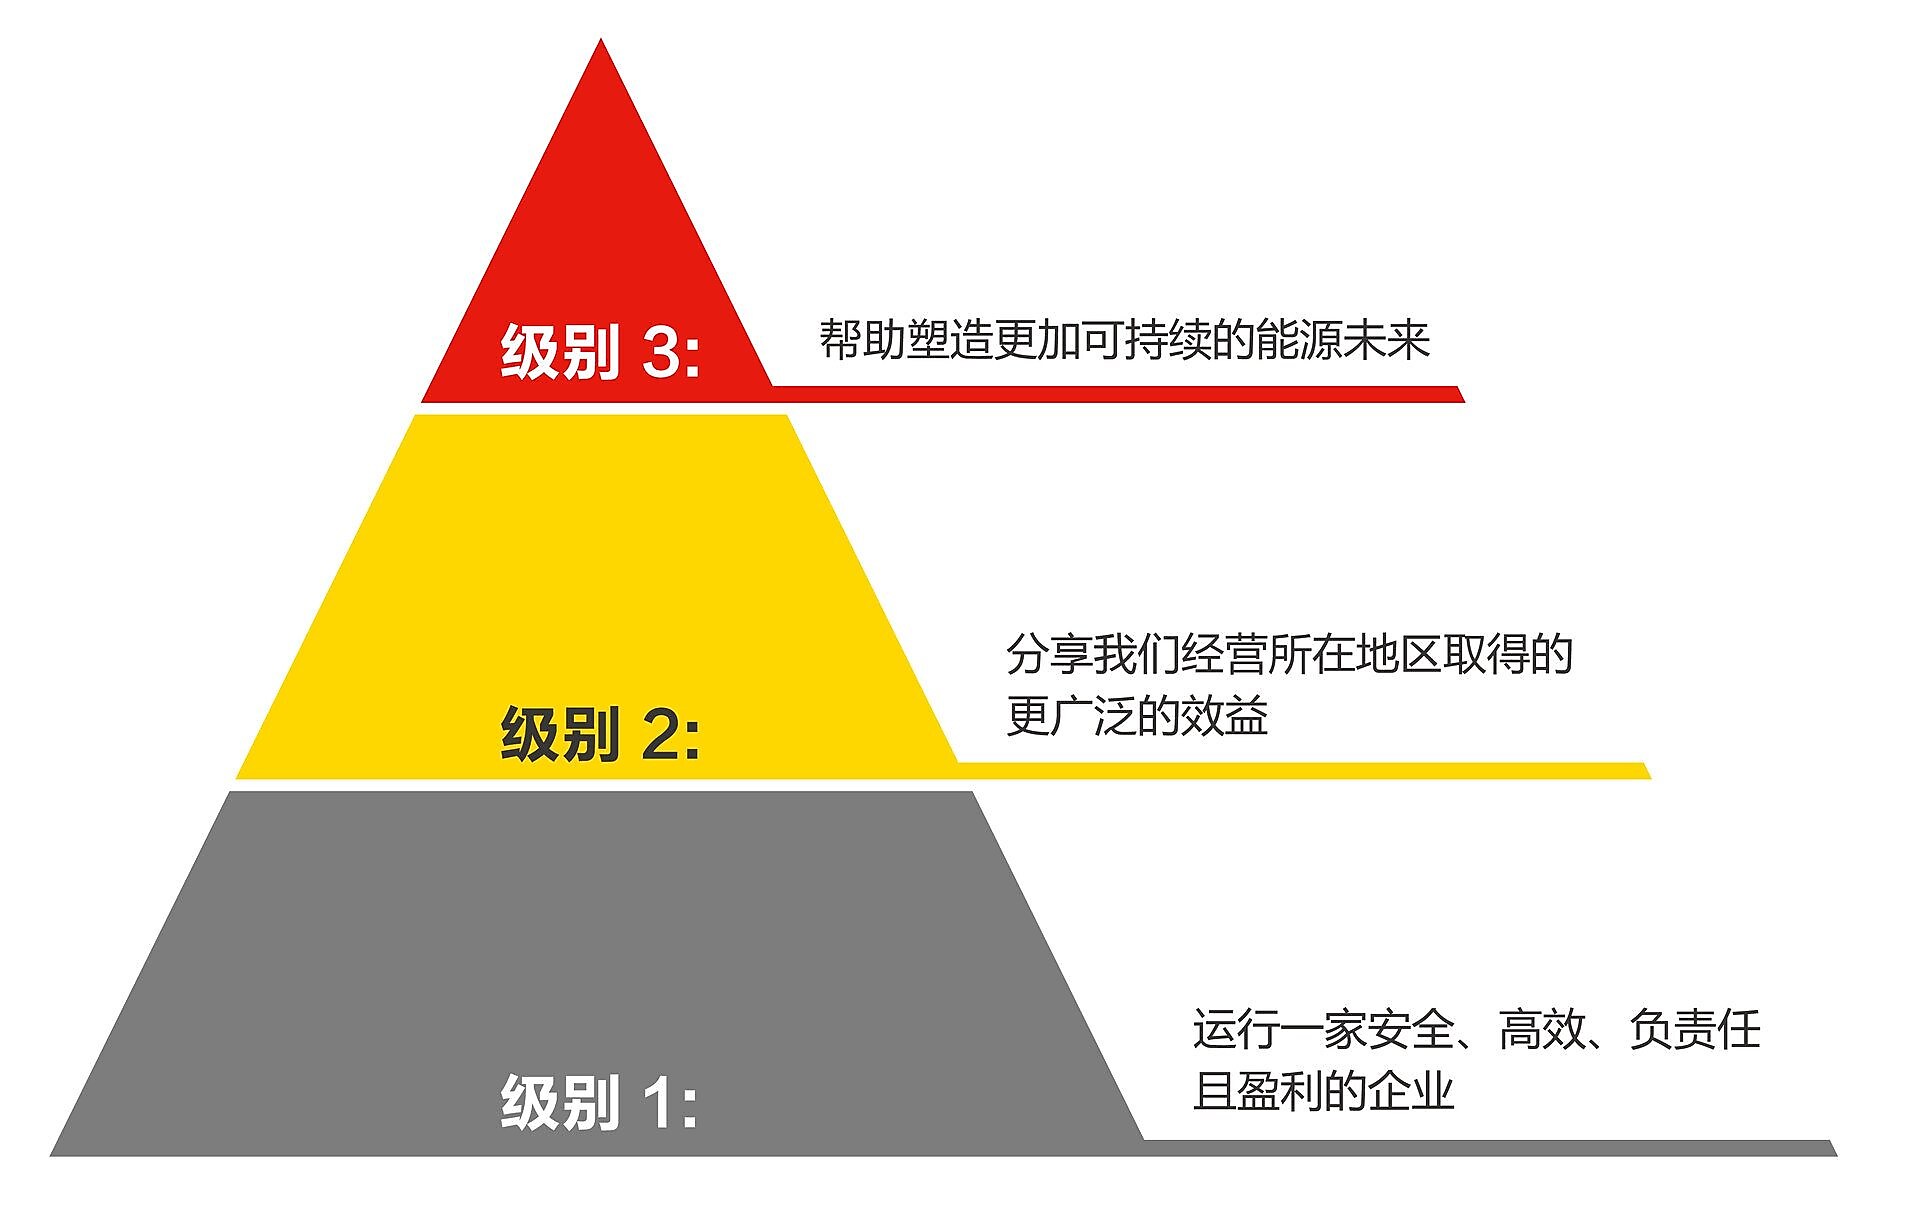 Sustainability triangle levels